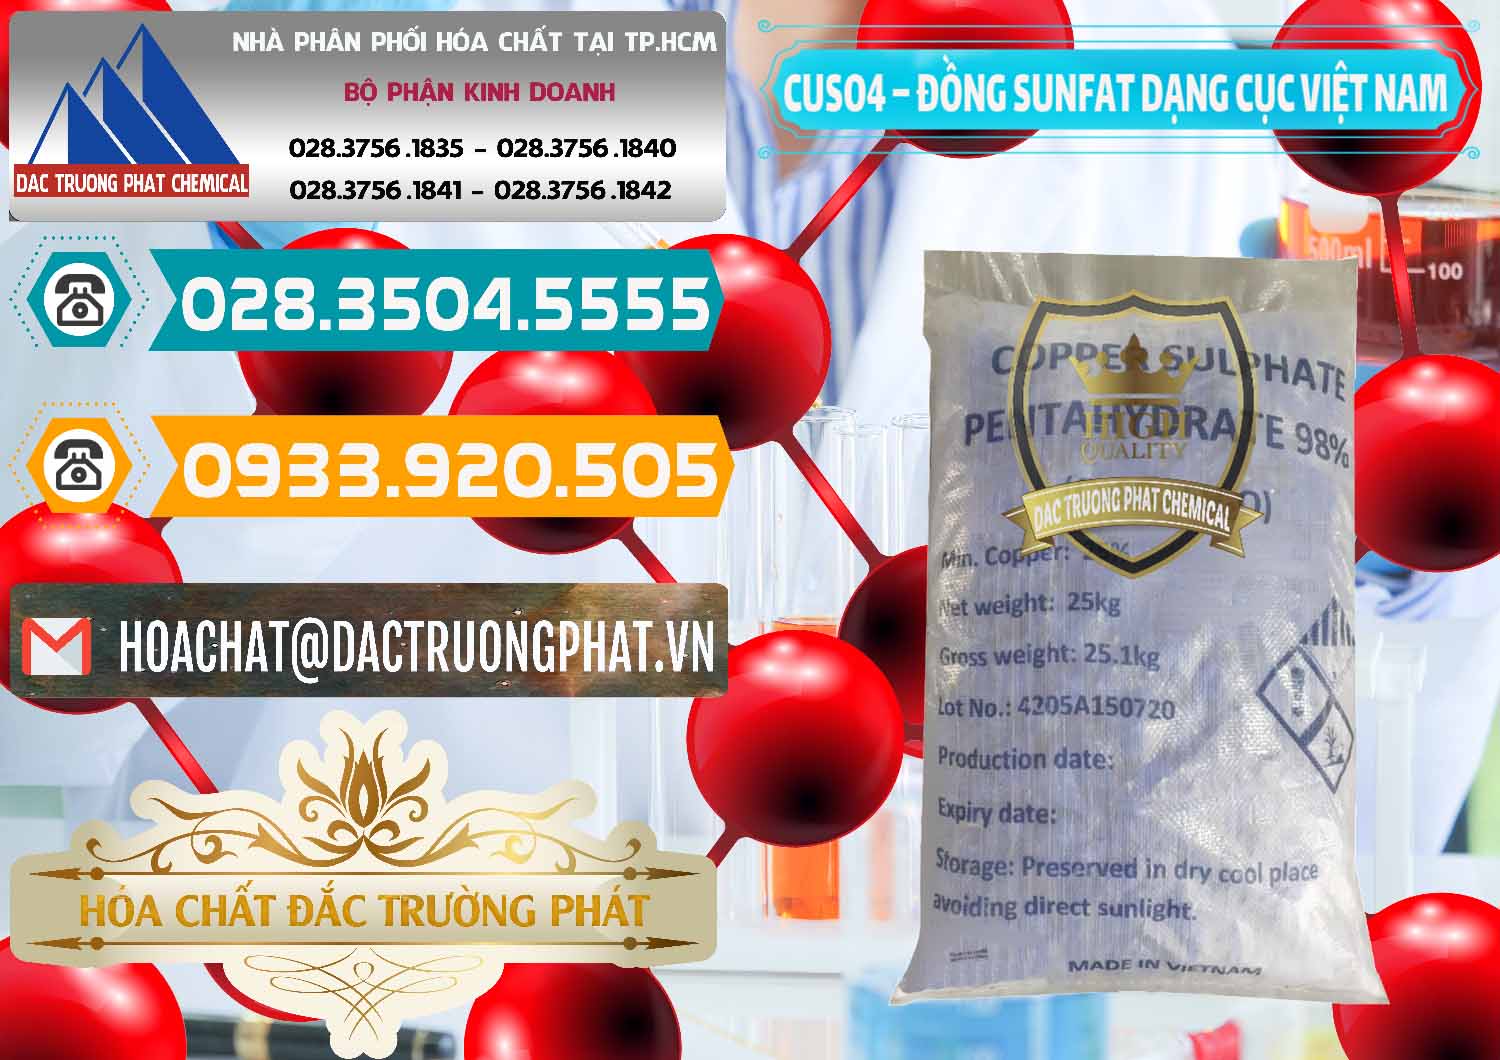 Phân phối và kinh doanh CUSO4 – Đồng Sunfat Dạng Cục Việt Nam - 0303 - Cty cung cấp & kinh doanh hóa chất tại TP.HCM - congtyhoachat.vn